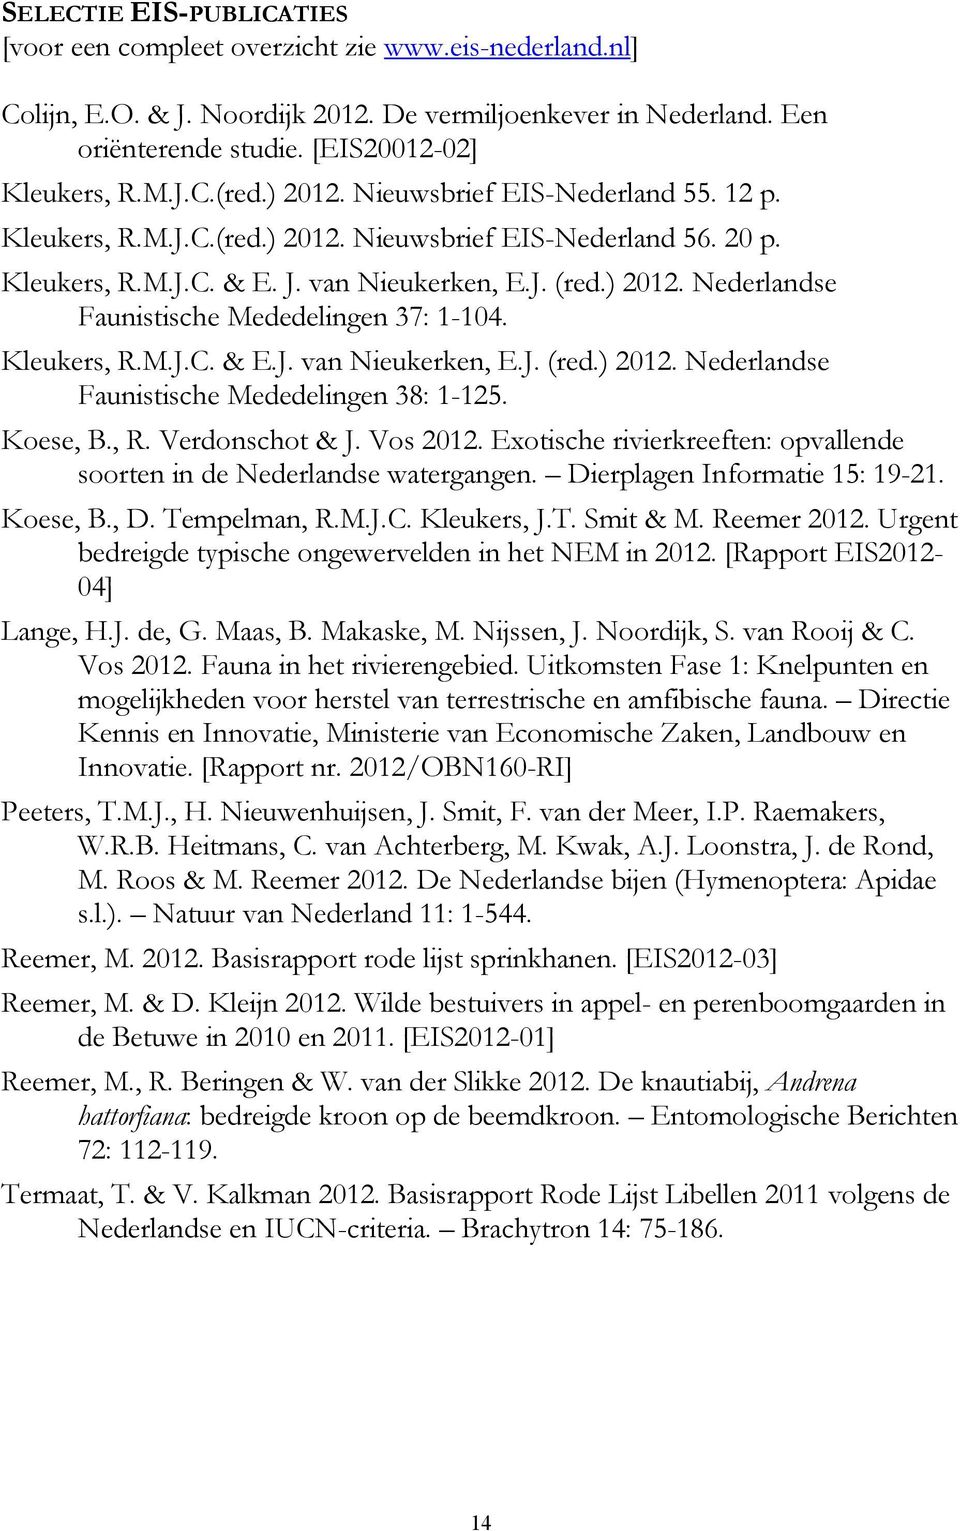 Kleukers, R.M.J.C. & E.J. van Nieukerken, E.J. (red.) 2012. Nederlandse Faunistische Mededelingen 38: 1-125. Koese, B., R. Verdonschot & J. Vos 2012.